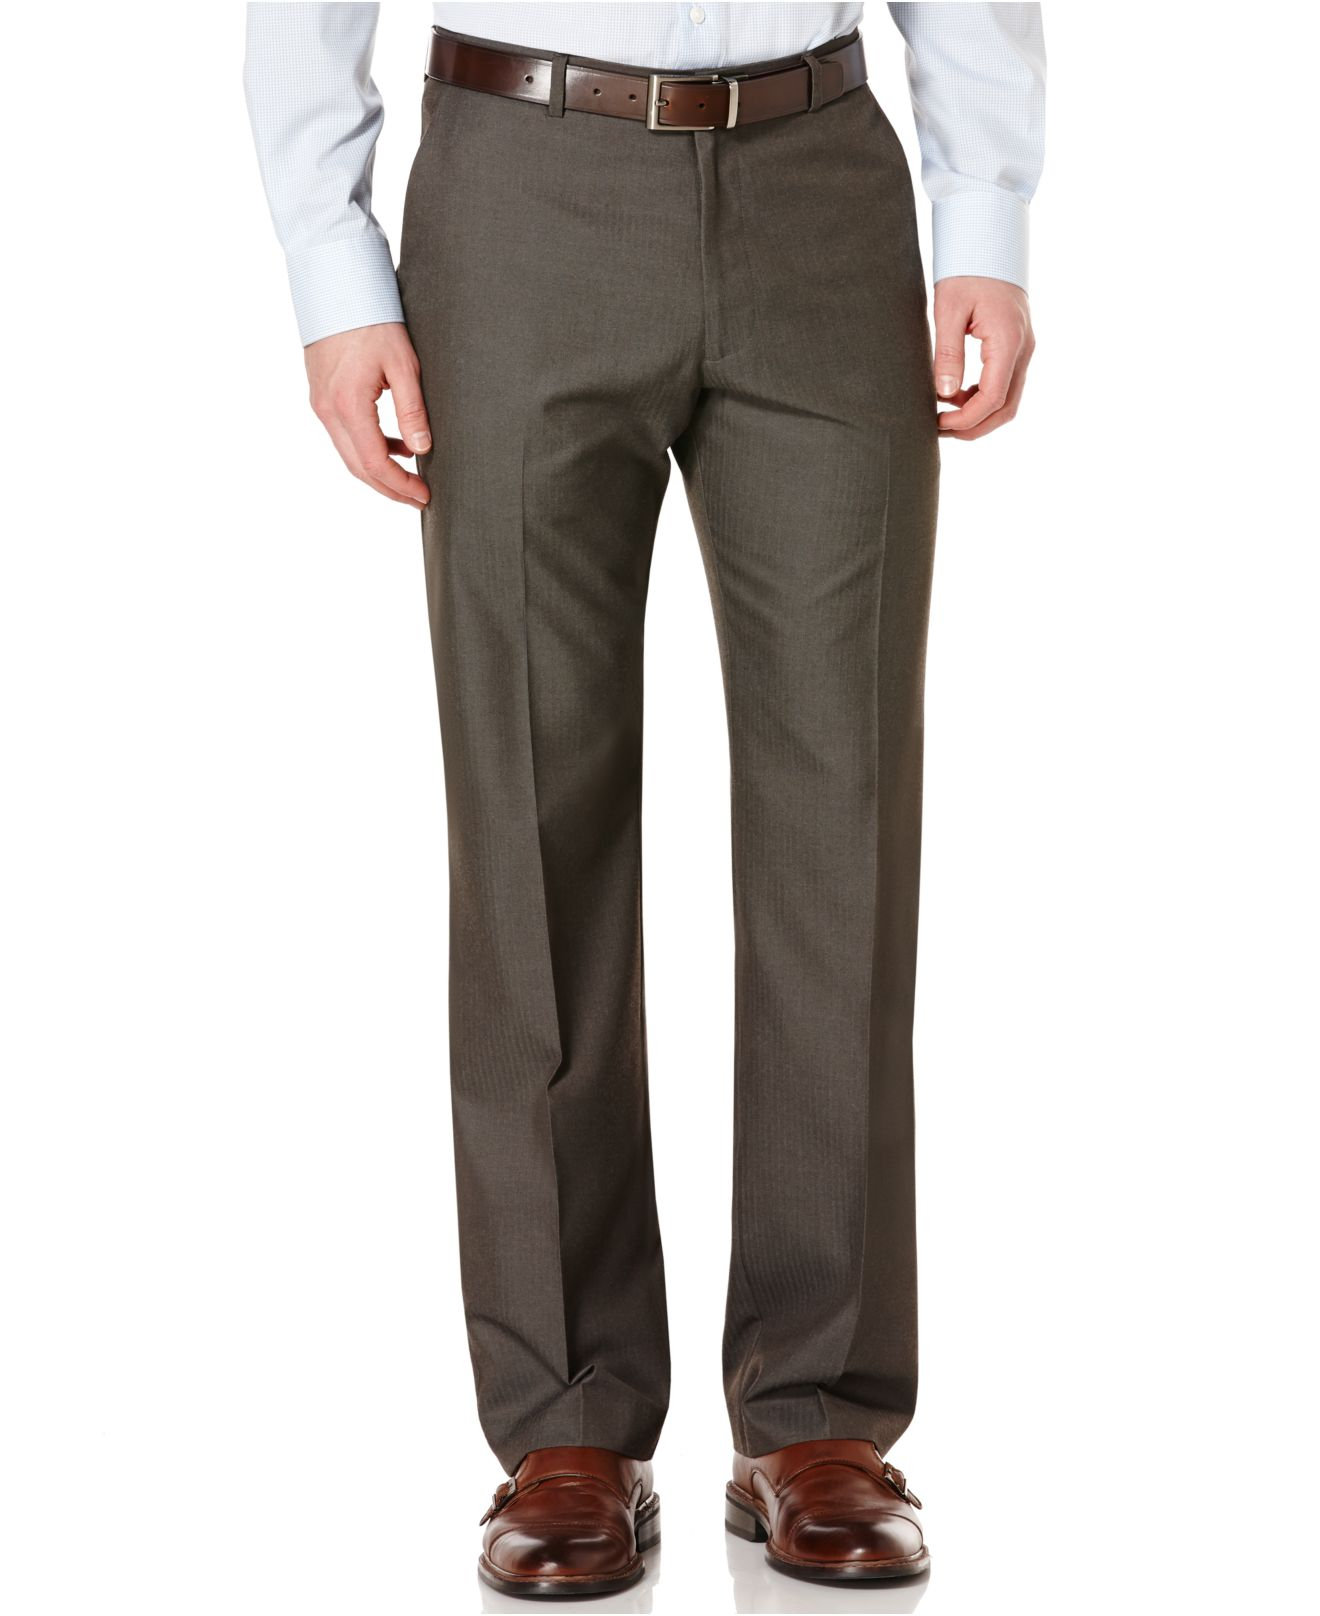 Lyst - Perry Ellis Solid Herringbone Dress Pants in Brown for Men